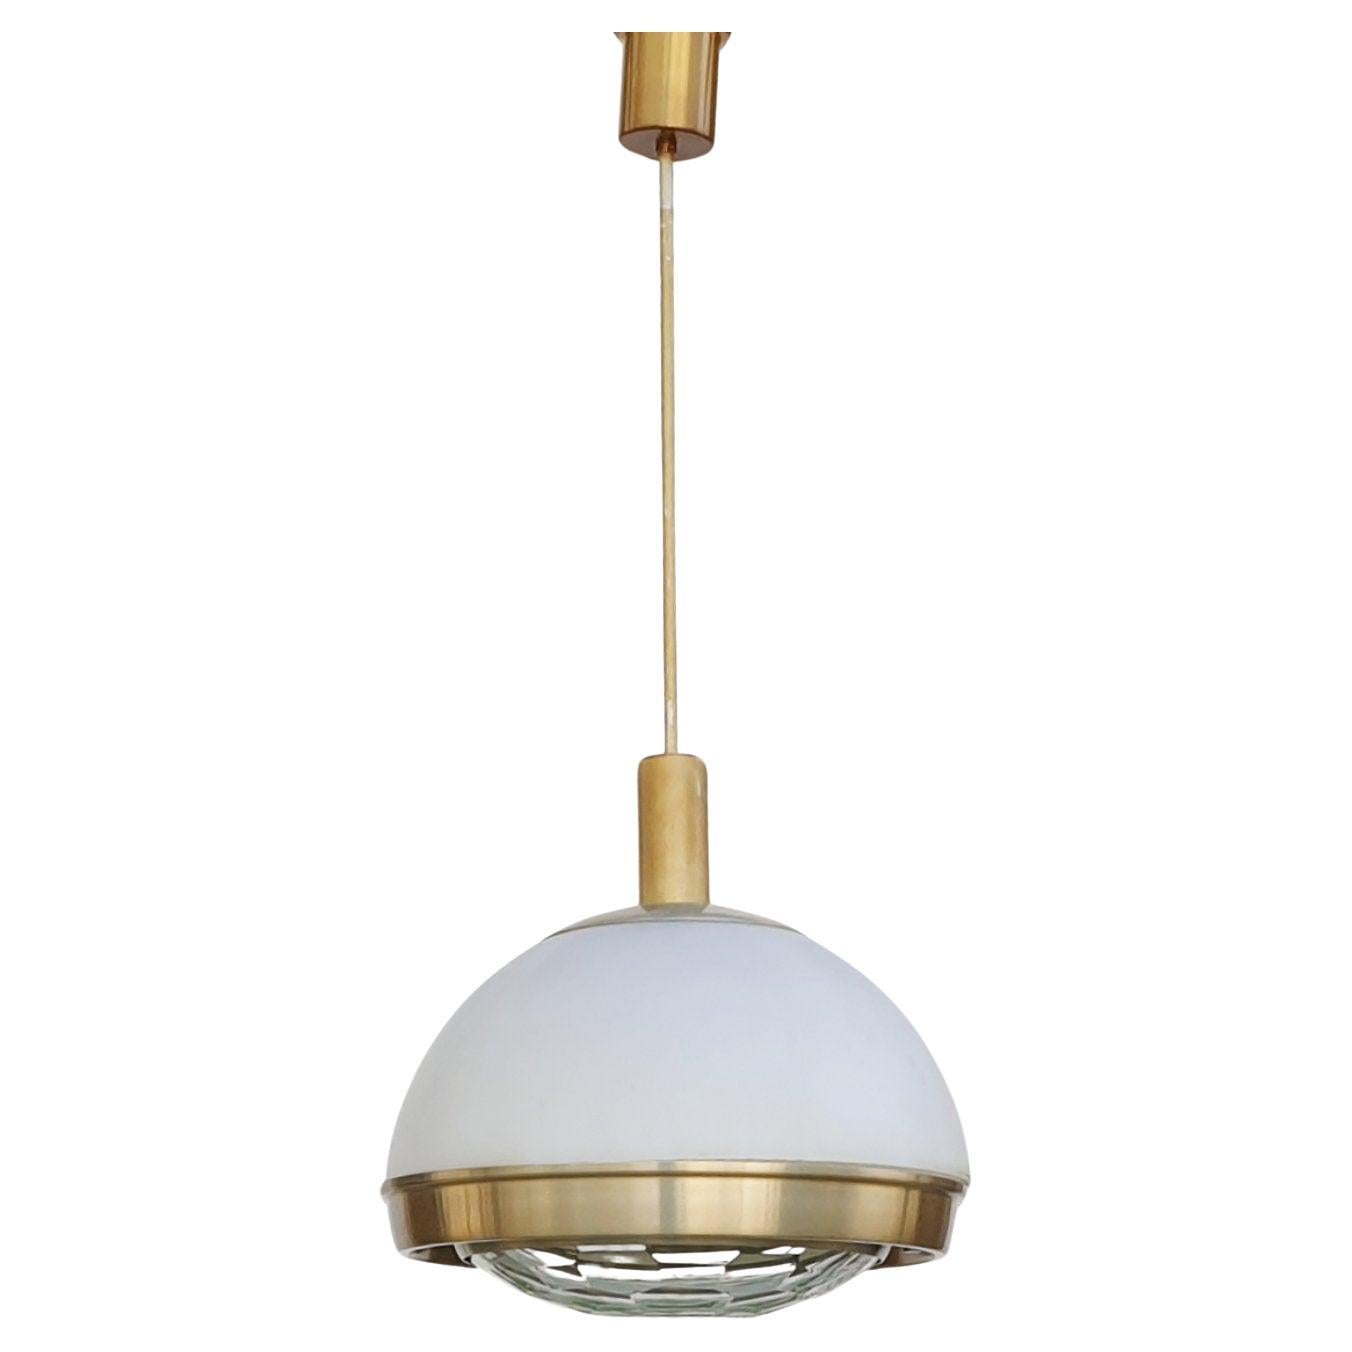 Italian Modern Pendant Lamp by Pia Giudetti Crippa for Lumi, Italy 60s For Sale